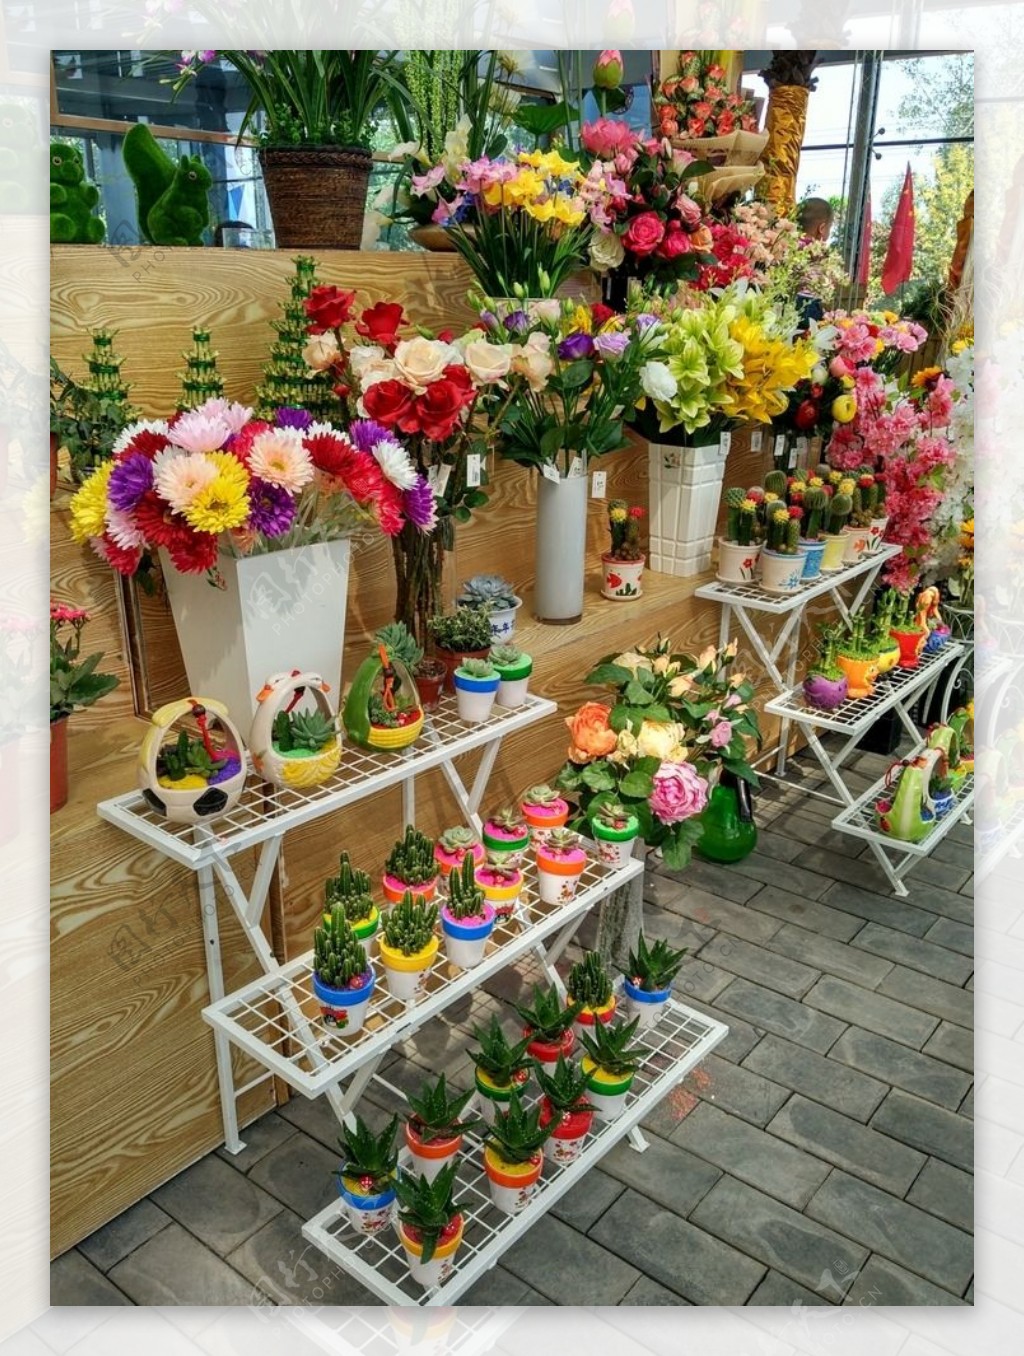 花卉市场图片浏览-花卉市场图片下载 - 酷吧图库